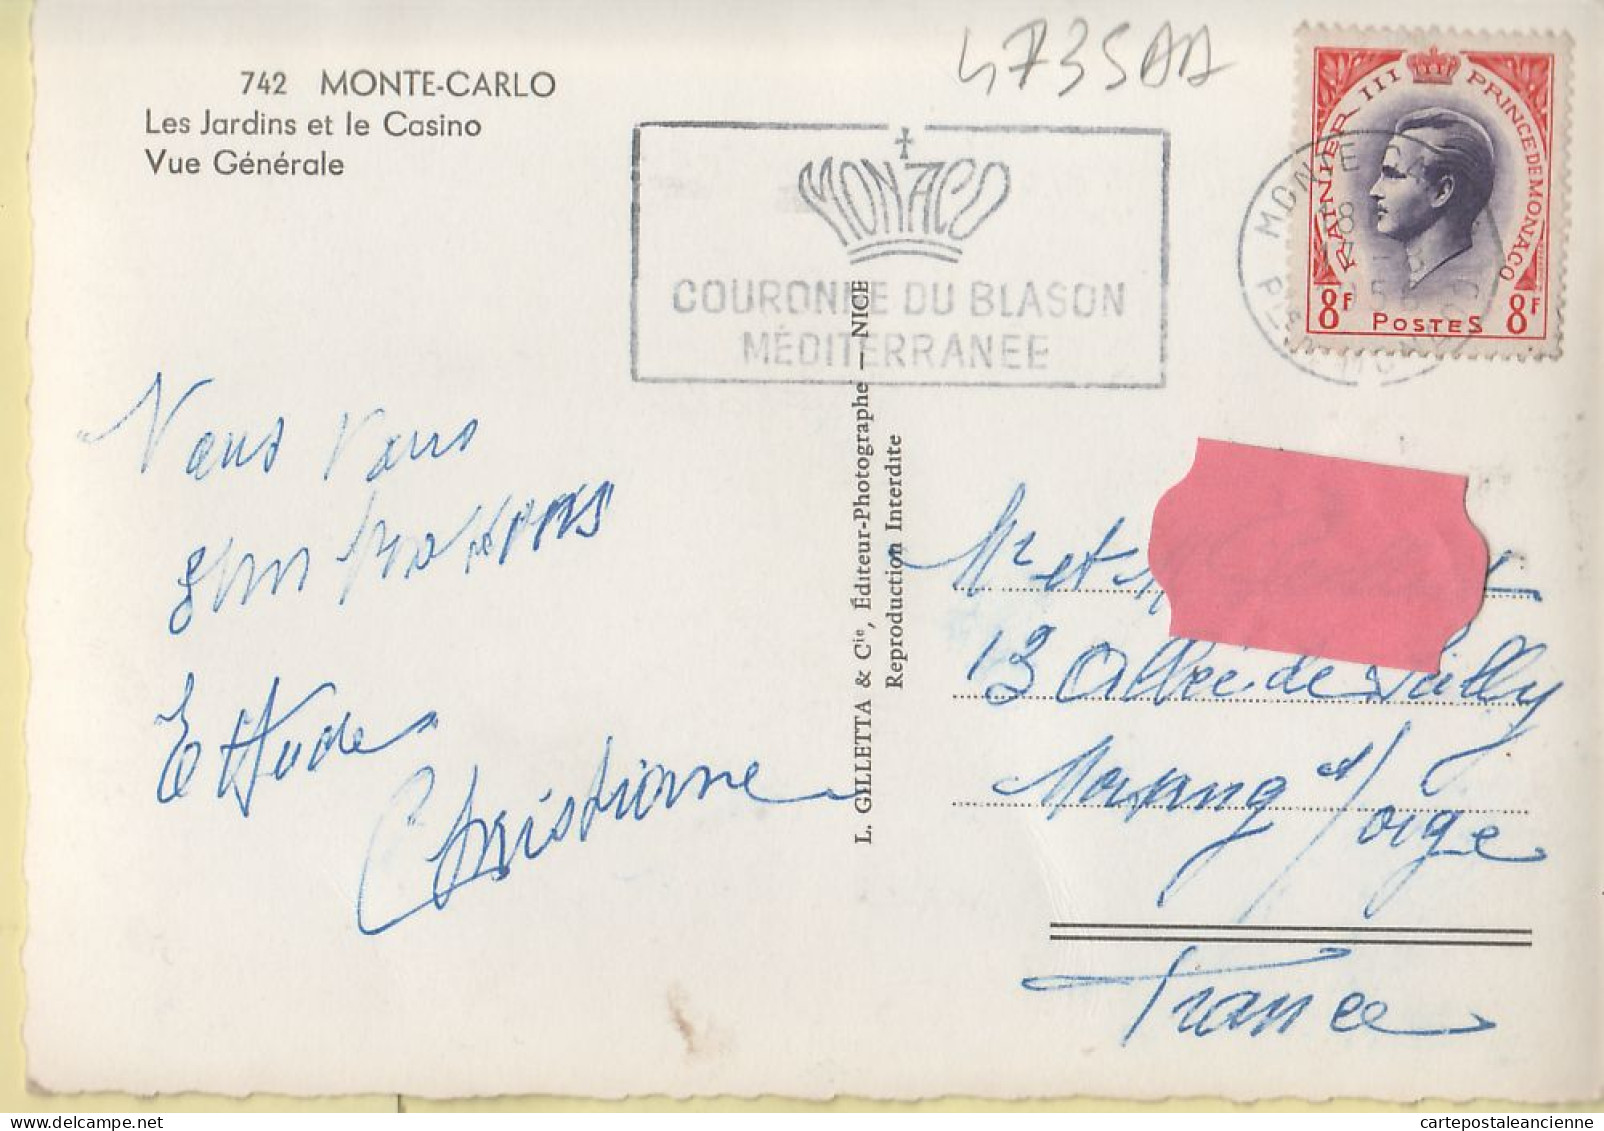 00833 ● Monaco MONTE-CARLO Les Jardins Casino Vue Générale Flamme COURONNE BLASON MEDITERRANEE 17.08.1956 -GILETTA 742 - Multi-vues, Vues Panoramiques